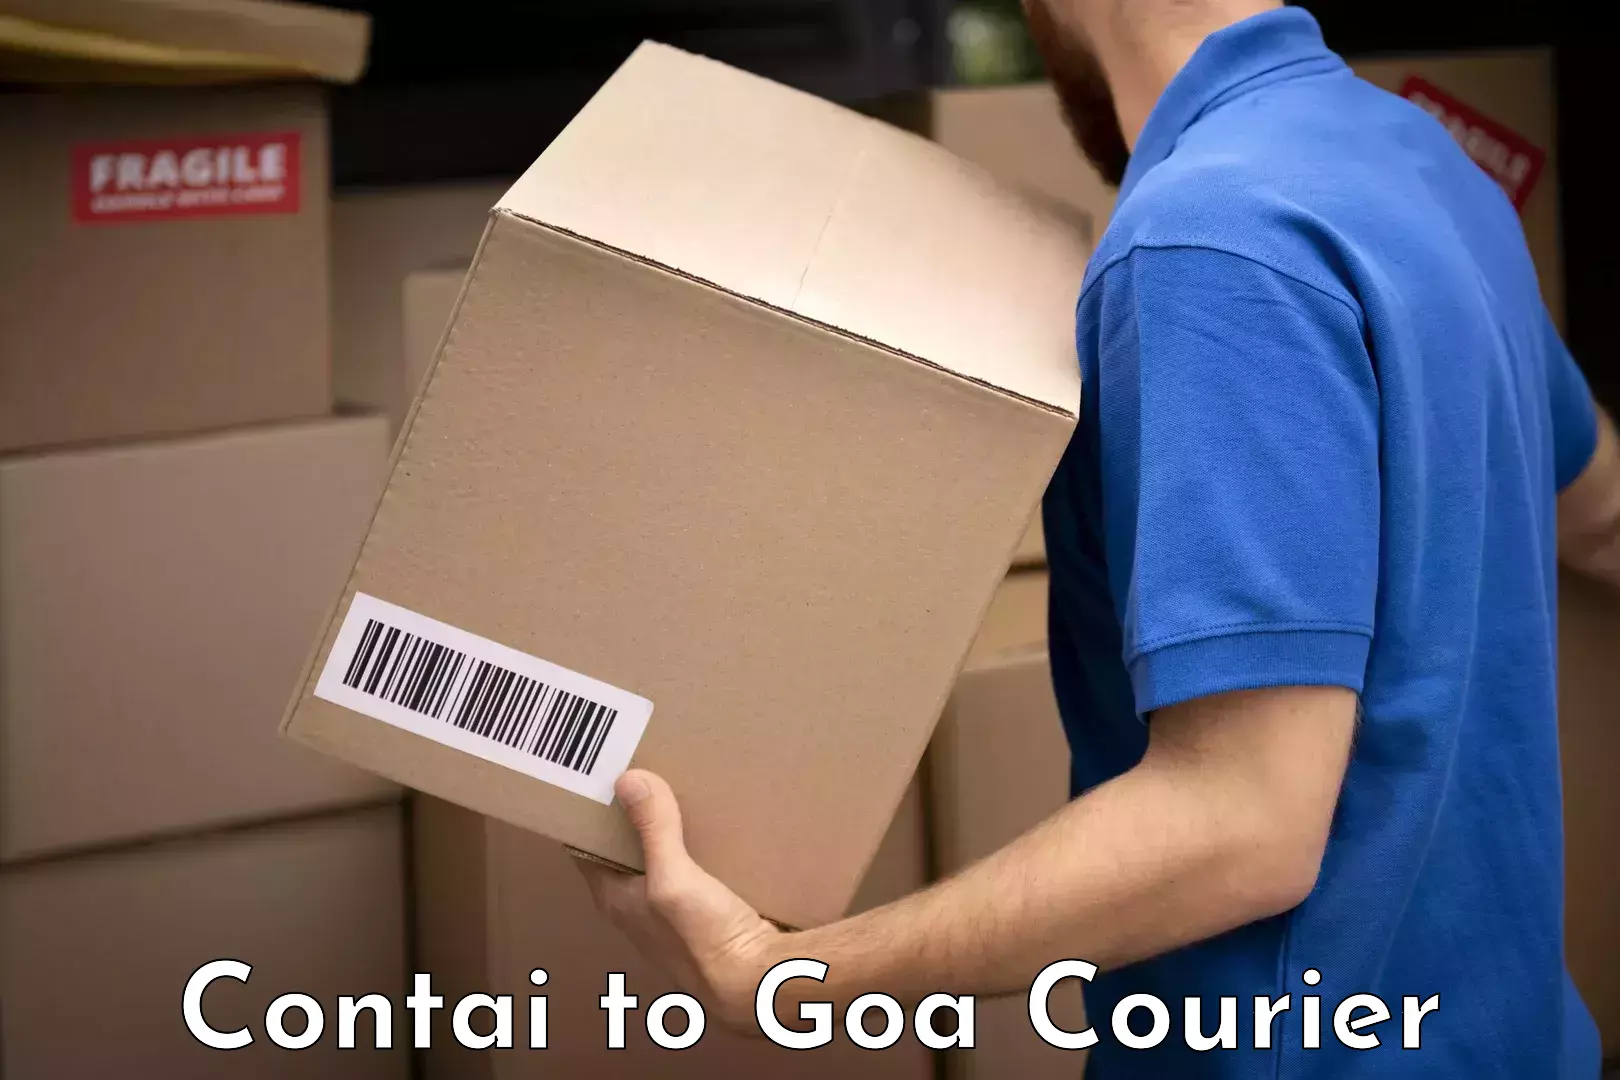 Luggage transit service Contai to Goa